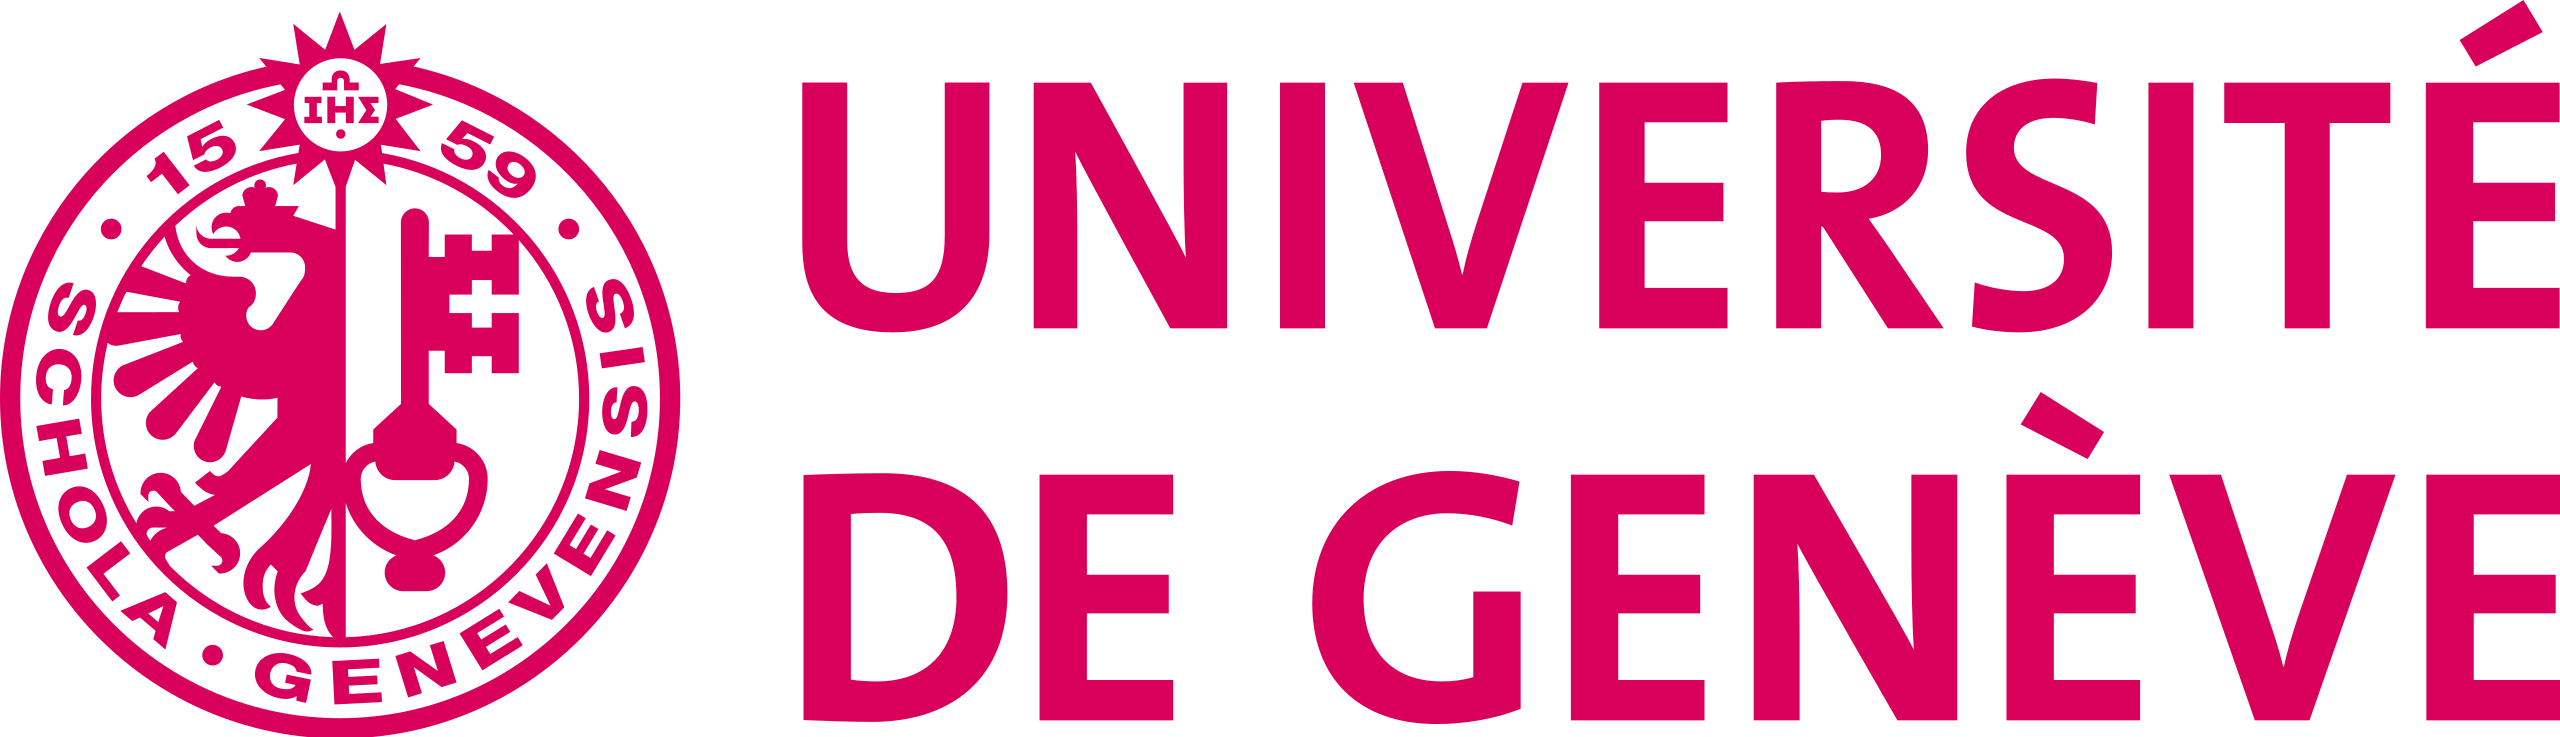 Logo de l'Université de Genève